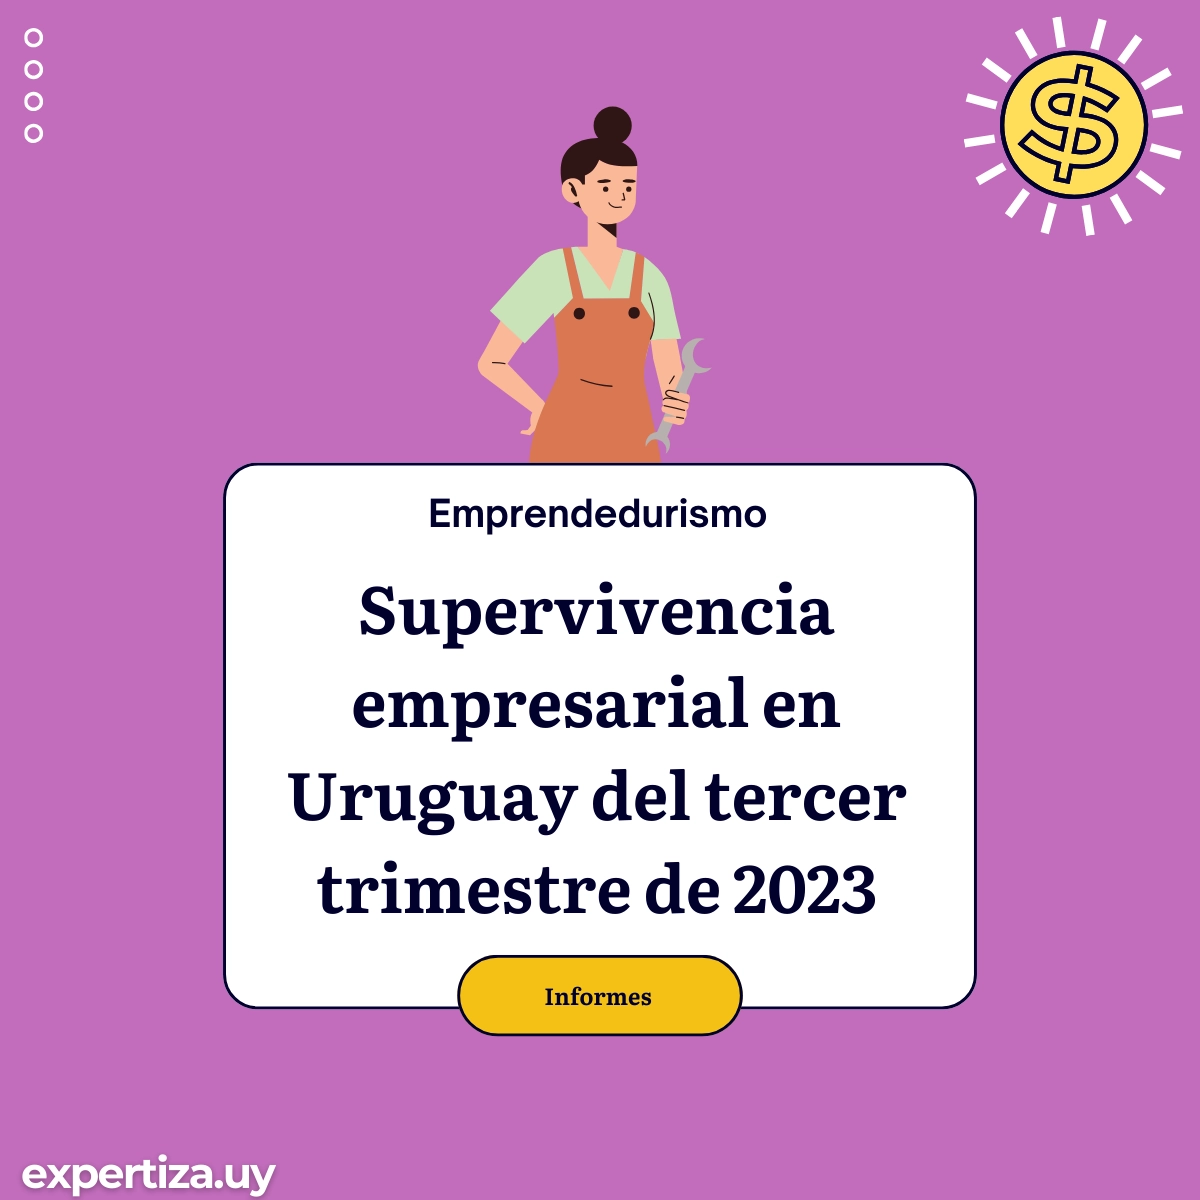 Supervivencia empresarial en Uruguay del tercer trimestre de 2023.